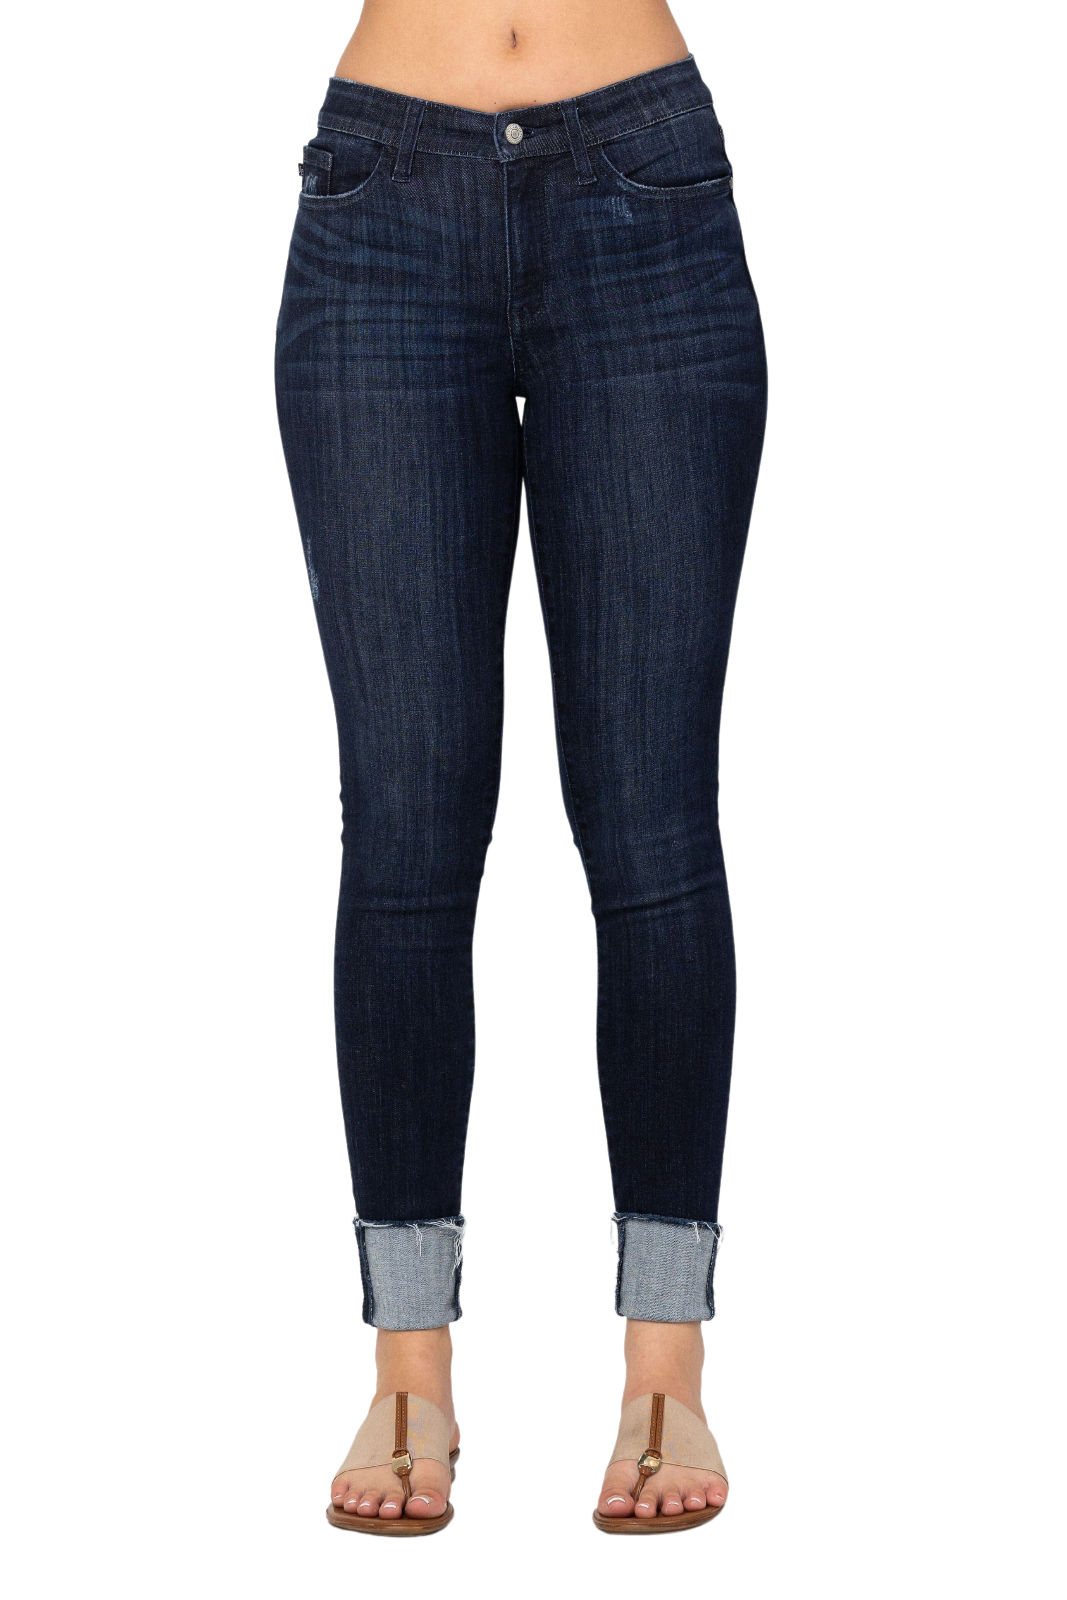 Judy Blue Midrise Cuffed Skinny Long/Tall Jeans jeans by The Rustic Redbud | The Rustic Redbud Boutique